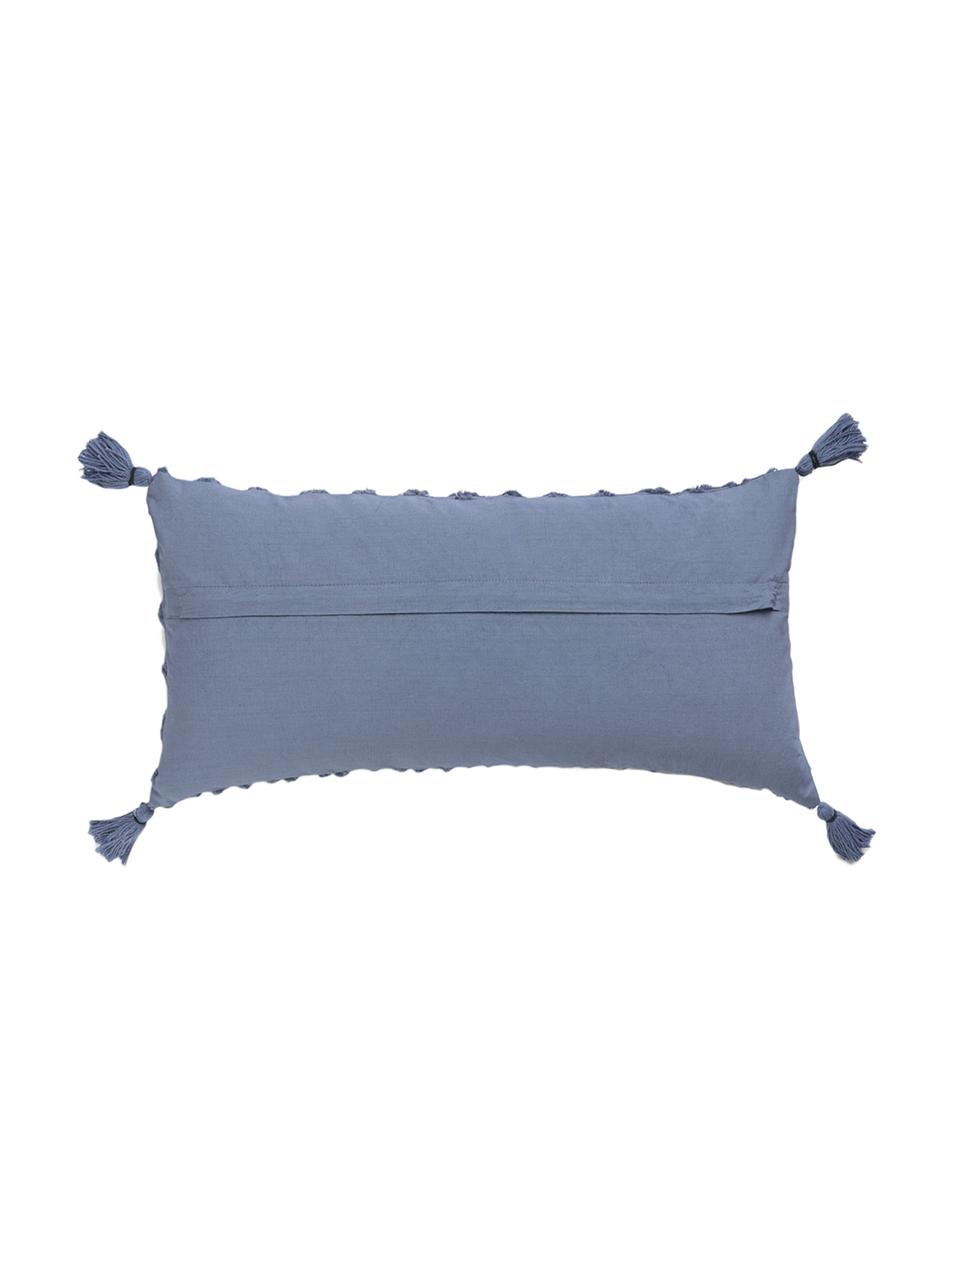 Poszewka na poduszkę Royal, Bawełna, Niebieski, S 30 x D 60 cm